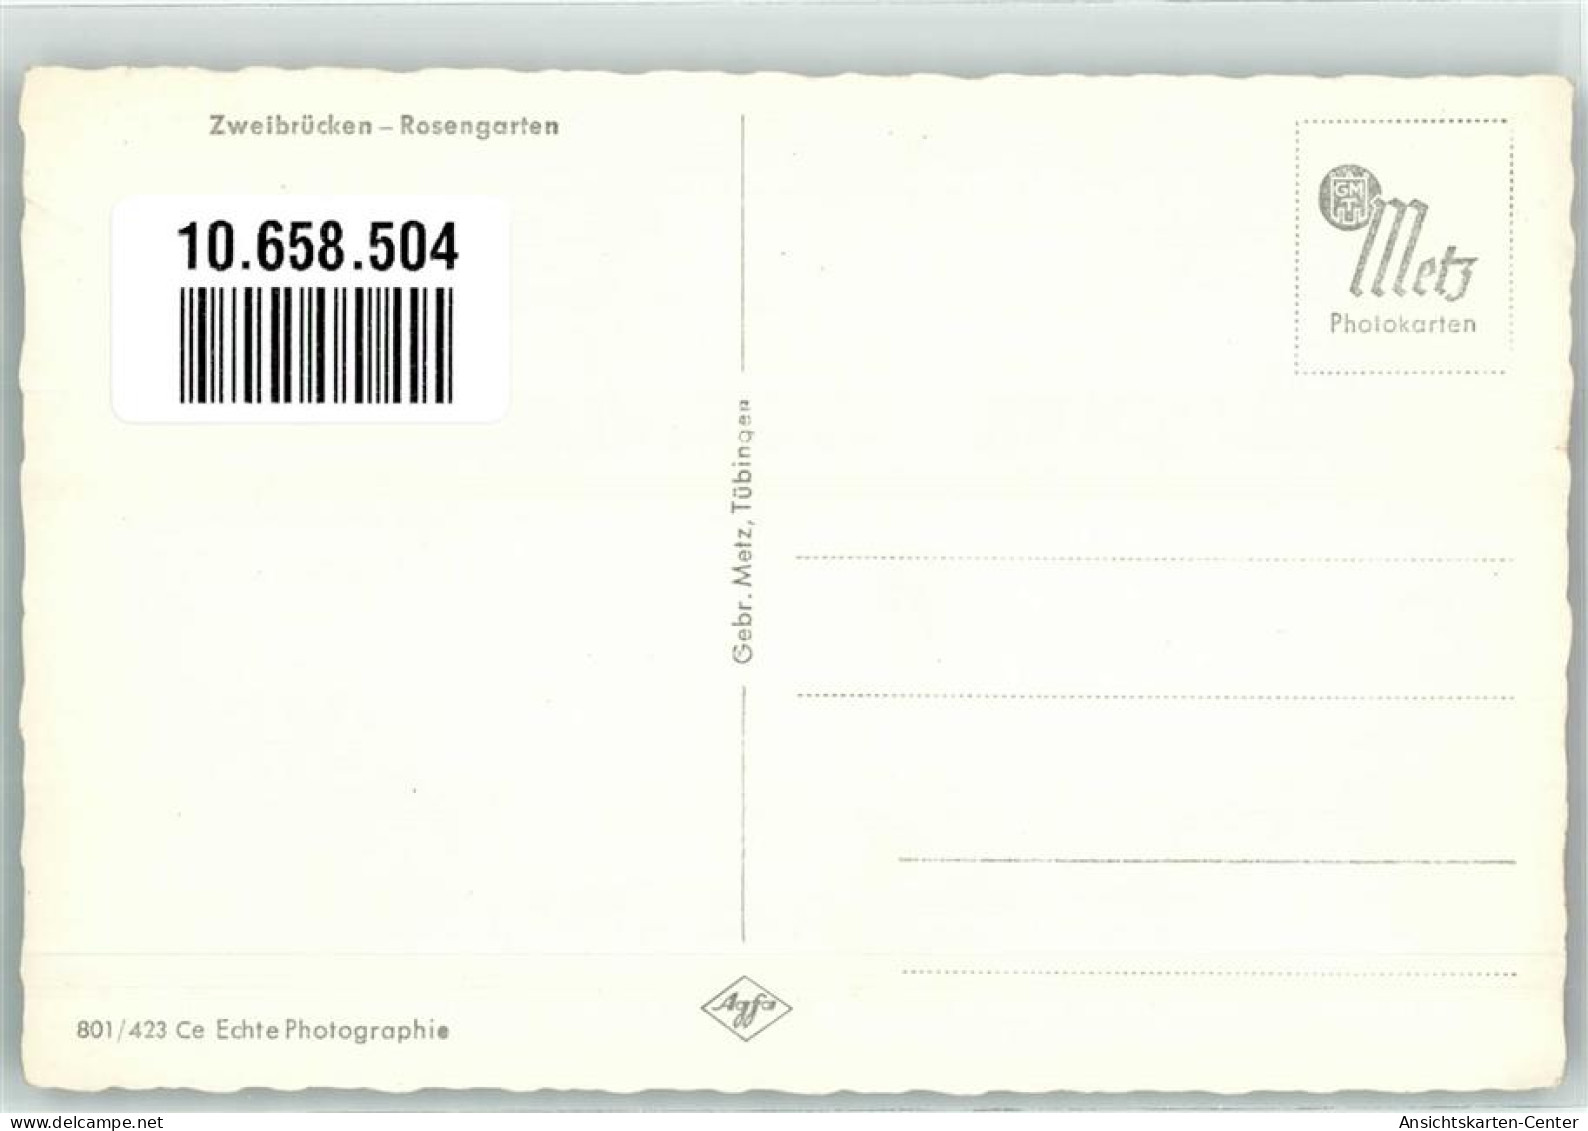 10658504 - Zweibruecken , Pfalz - Zweibruecken